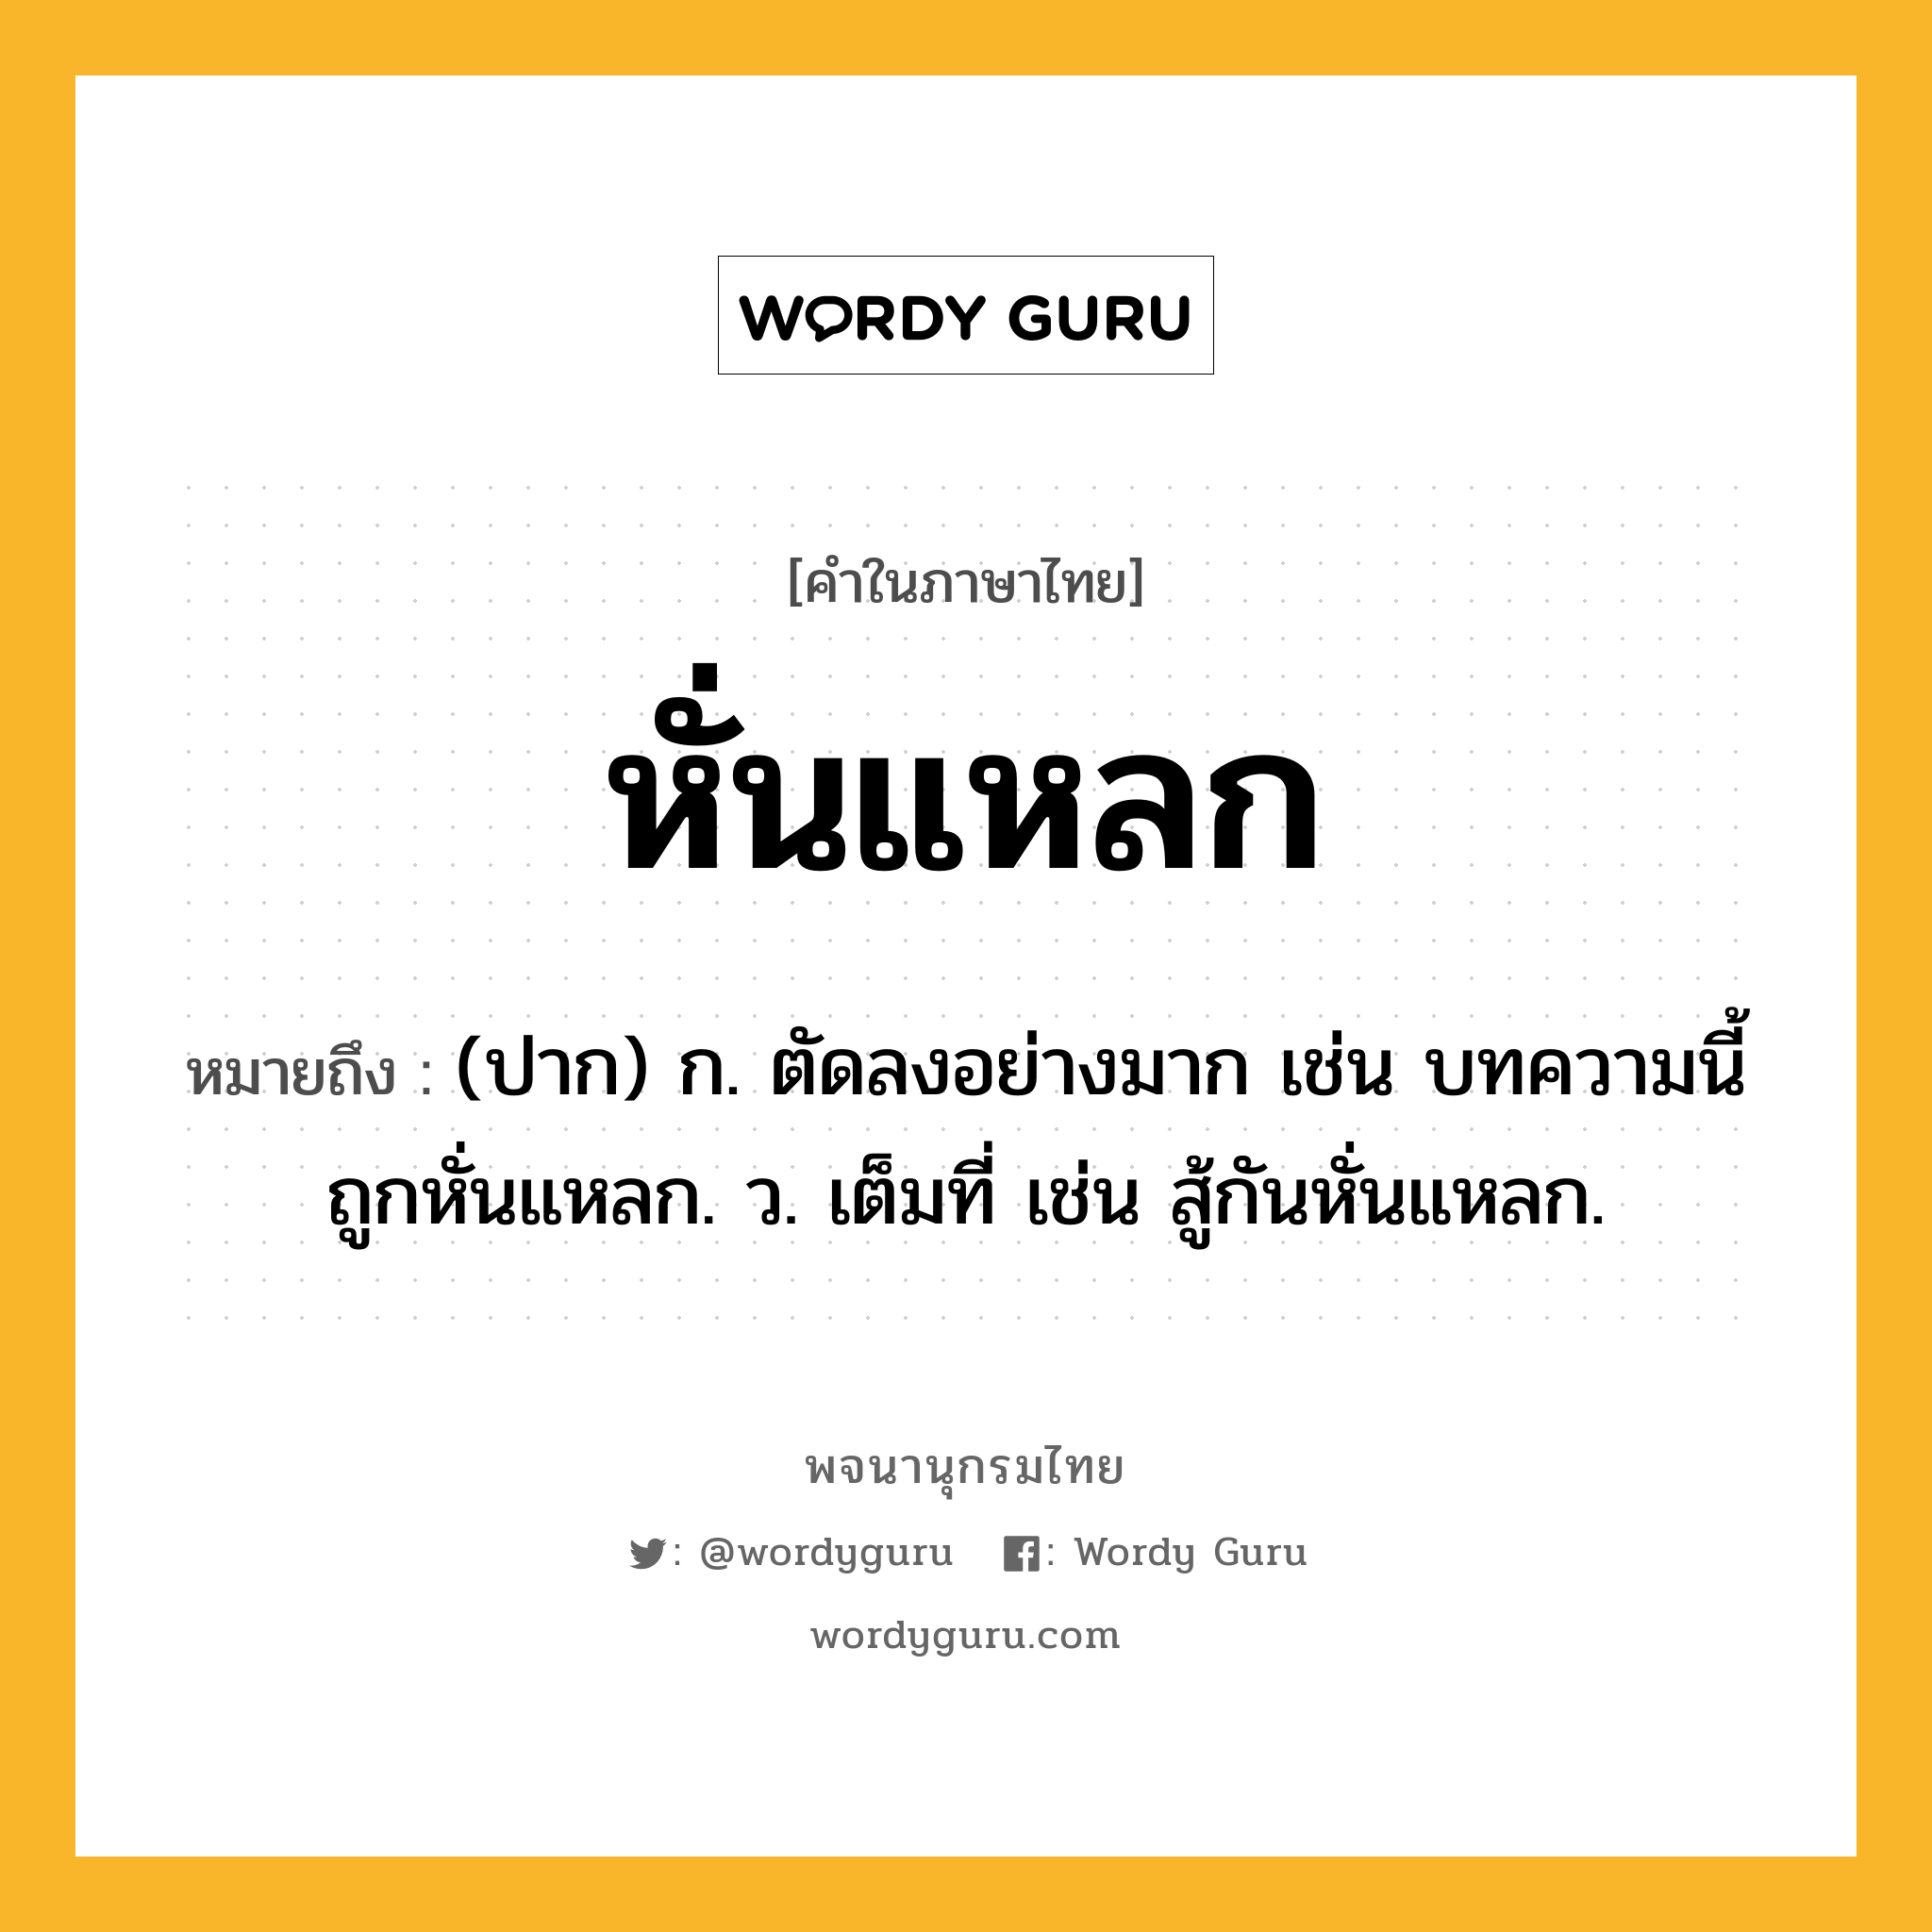 หั่นแหลก หมายถึงอะไร?, คำในภาษาไทย หั่นแหลก หมายถึง (ปาก) ก. ตัดลงอย่างมาก เช่น บทความนี้ถูกหั่นแหลก. ว. เต็มที่ เช่น สู้กันหั่นแหลก.